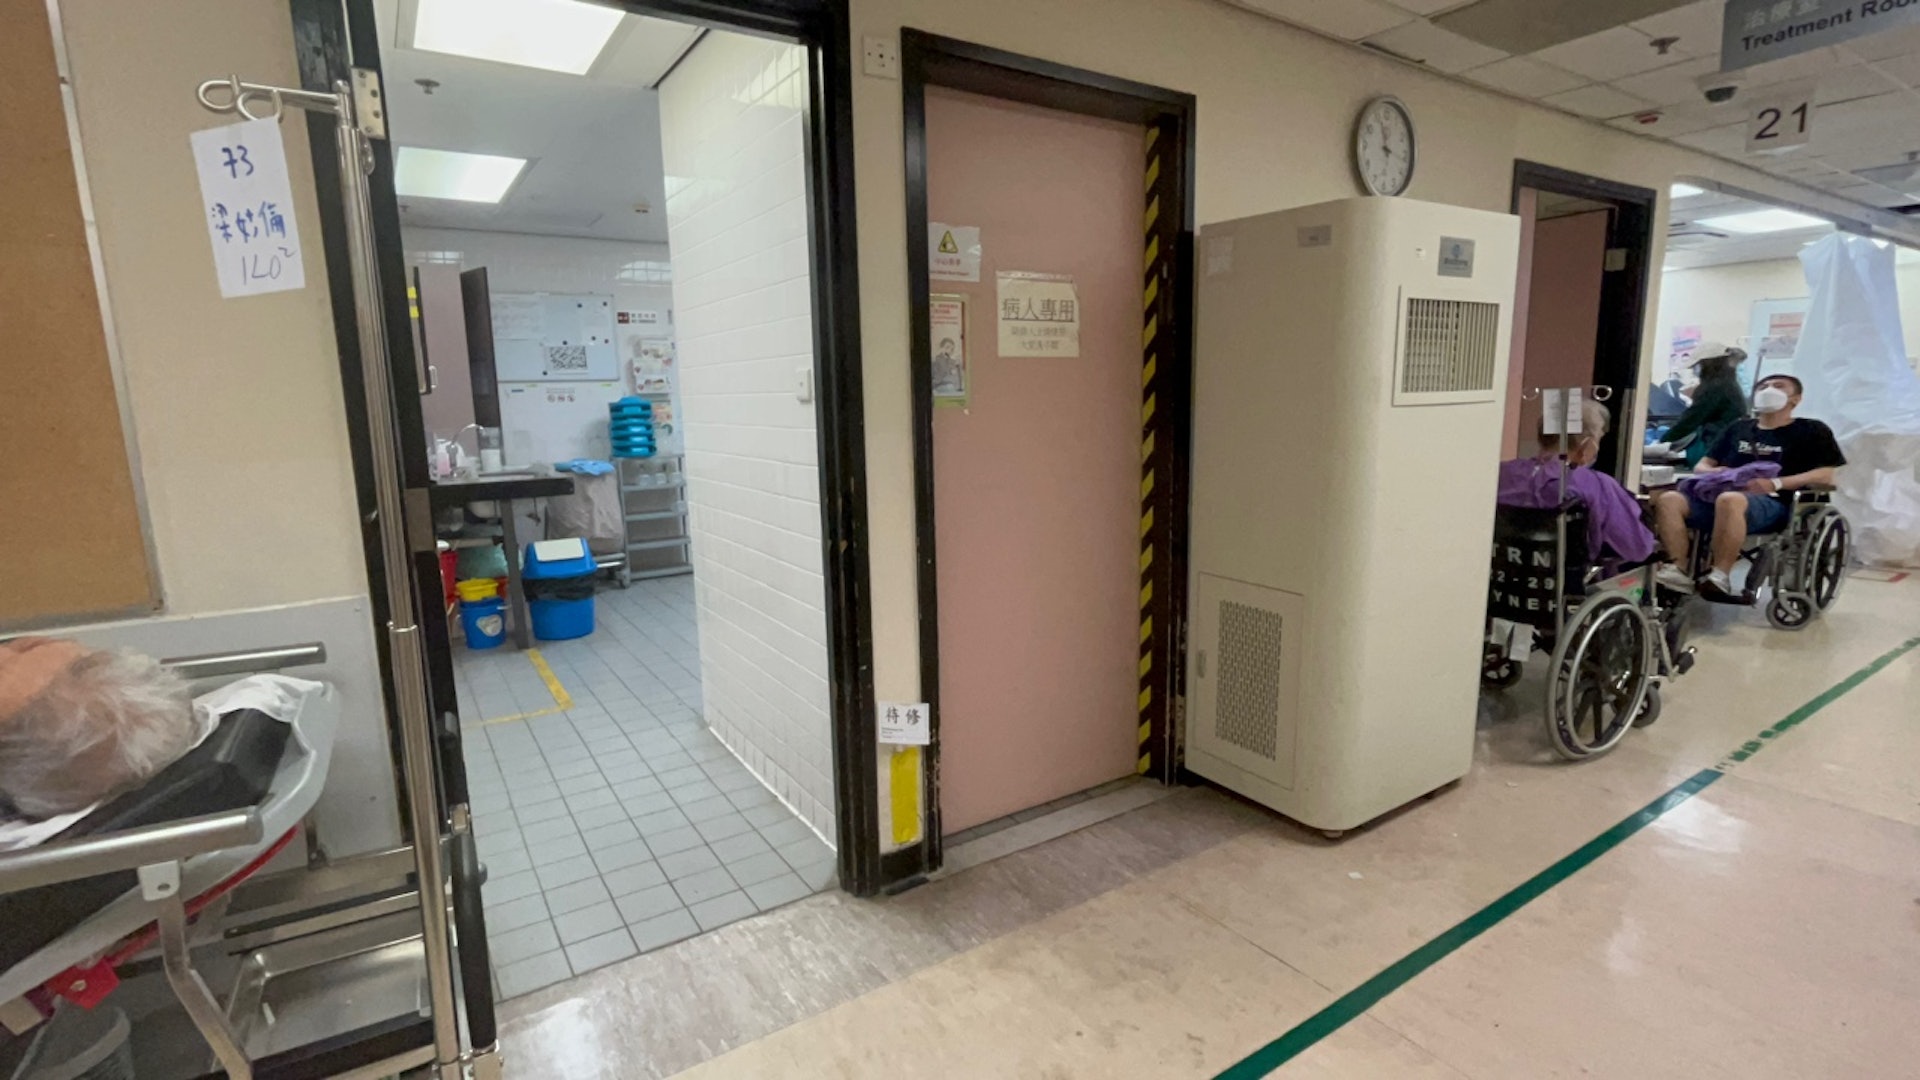 而位於東區醫院急症室等候區的病人專用廁所則能正常使用，不過廁所大門被上鎖，需要職員陪同才能使用。（鄧康翹攝）